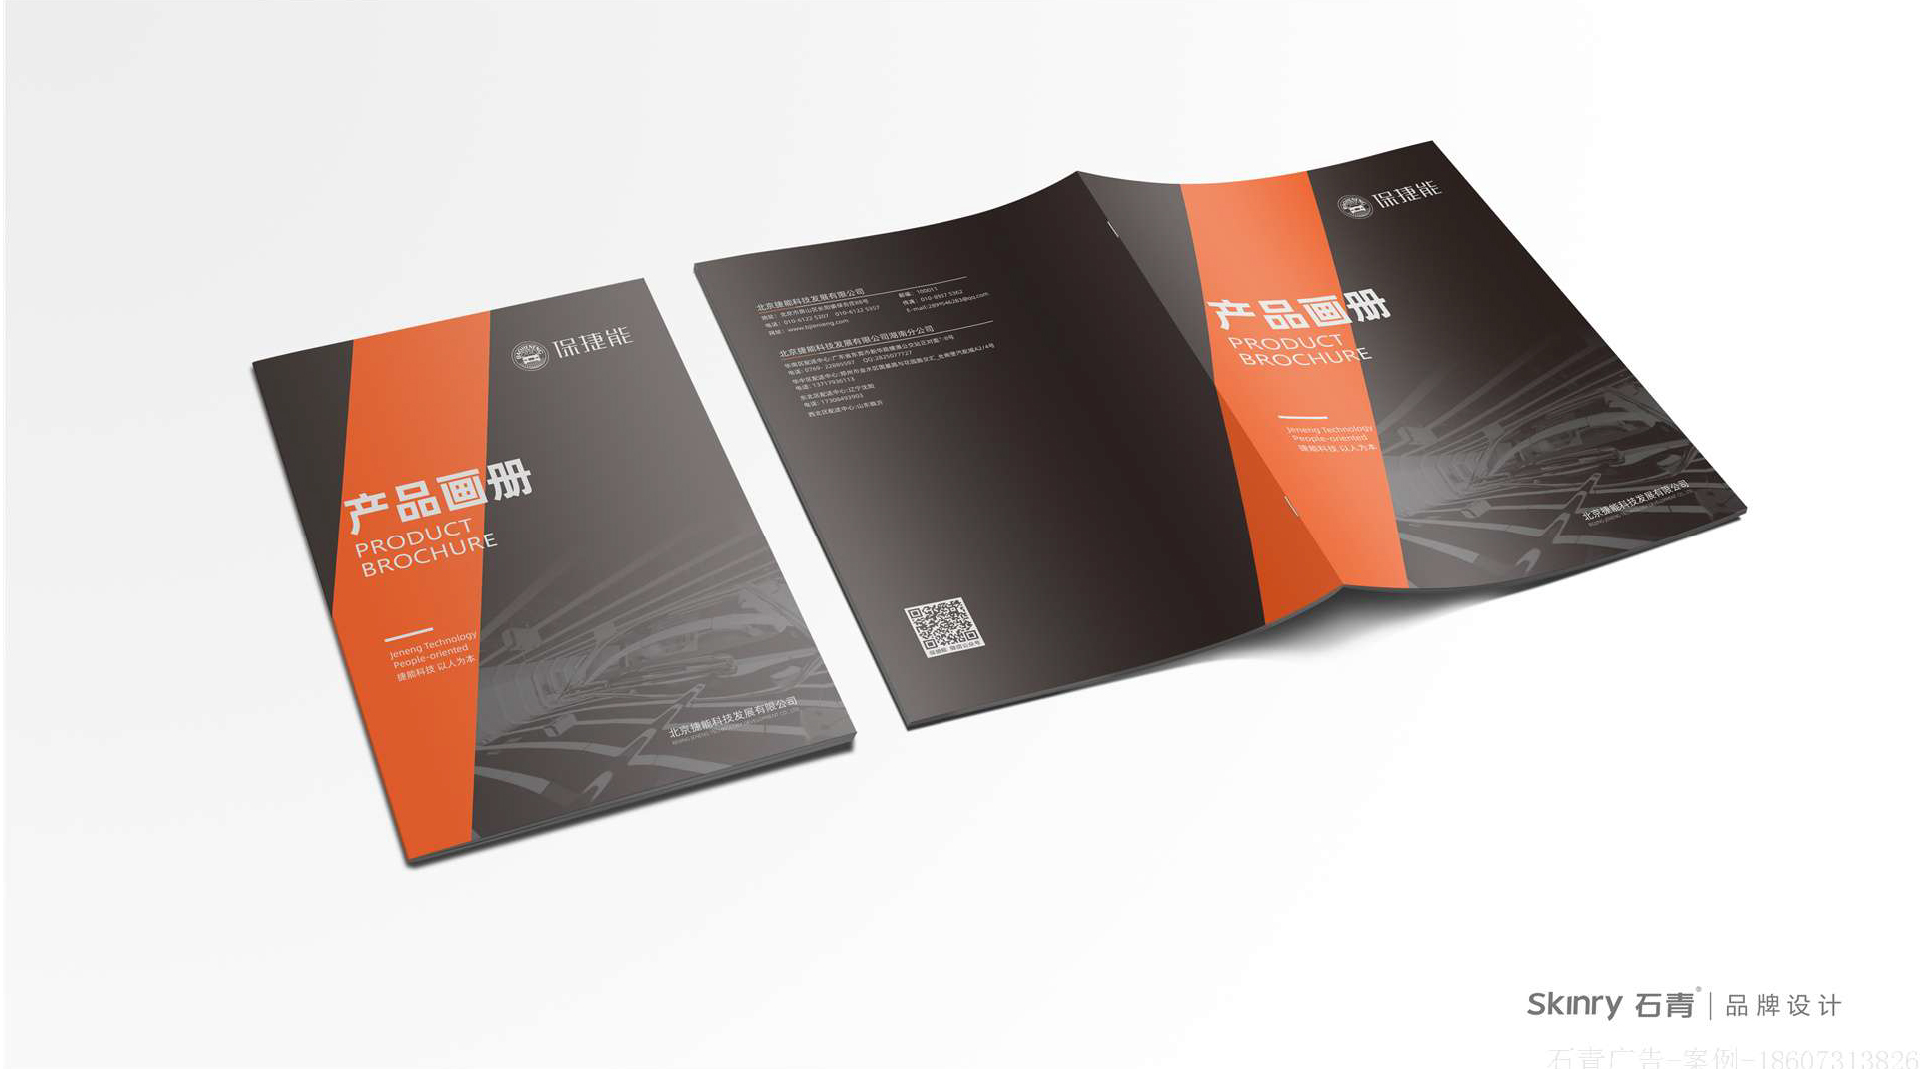 保捷能科技画册设计 环保画册设计制作案例